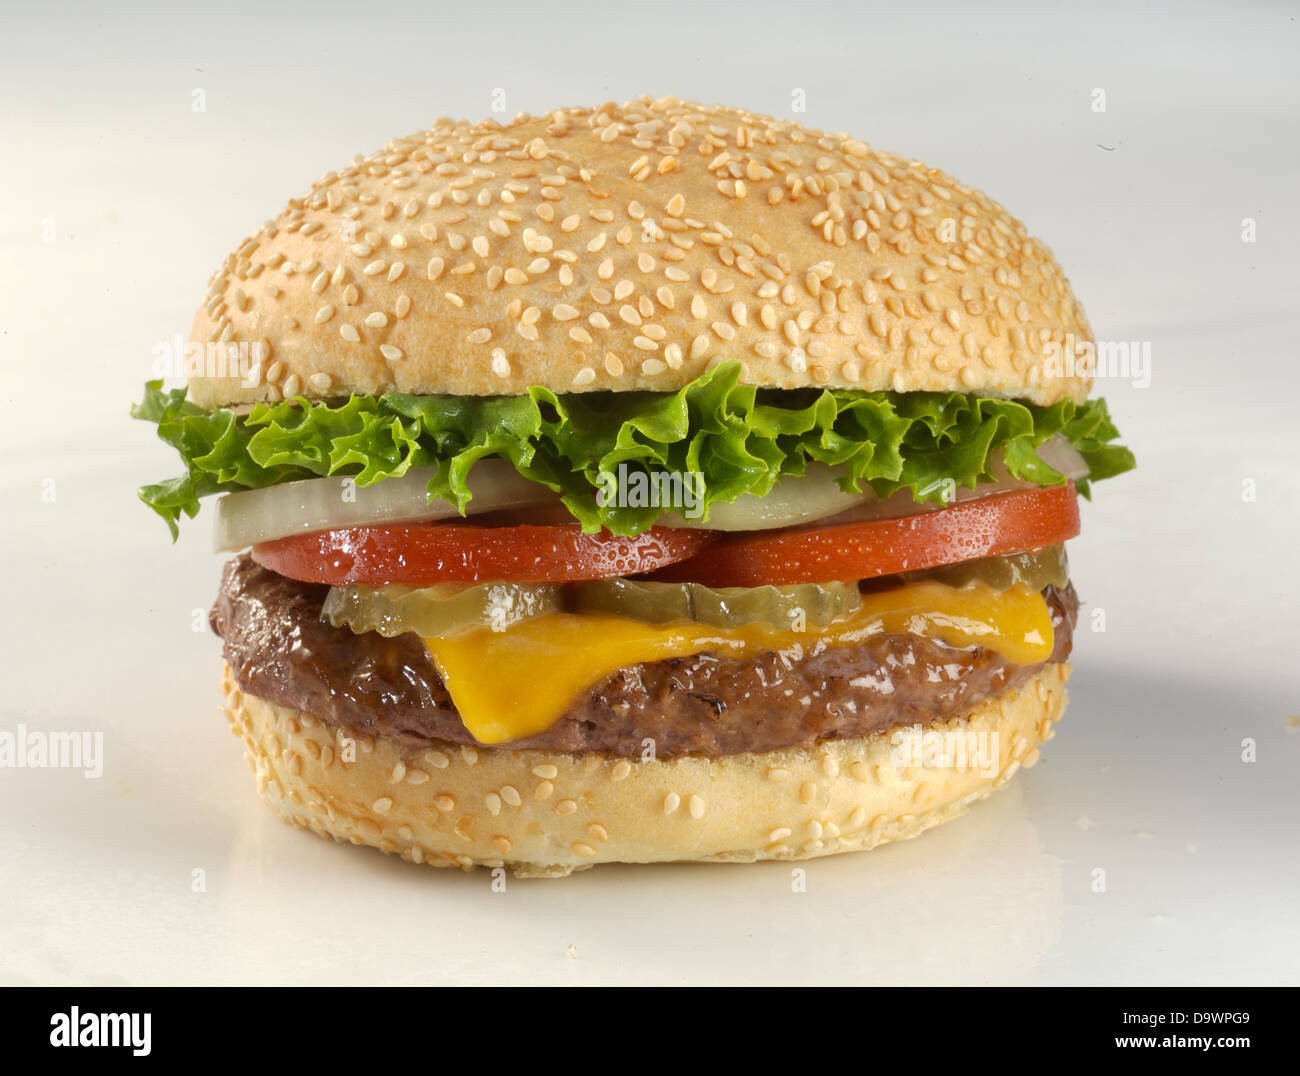 classic cheeseburger Stock Photo